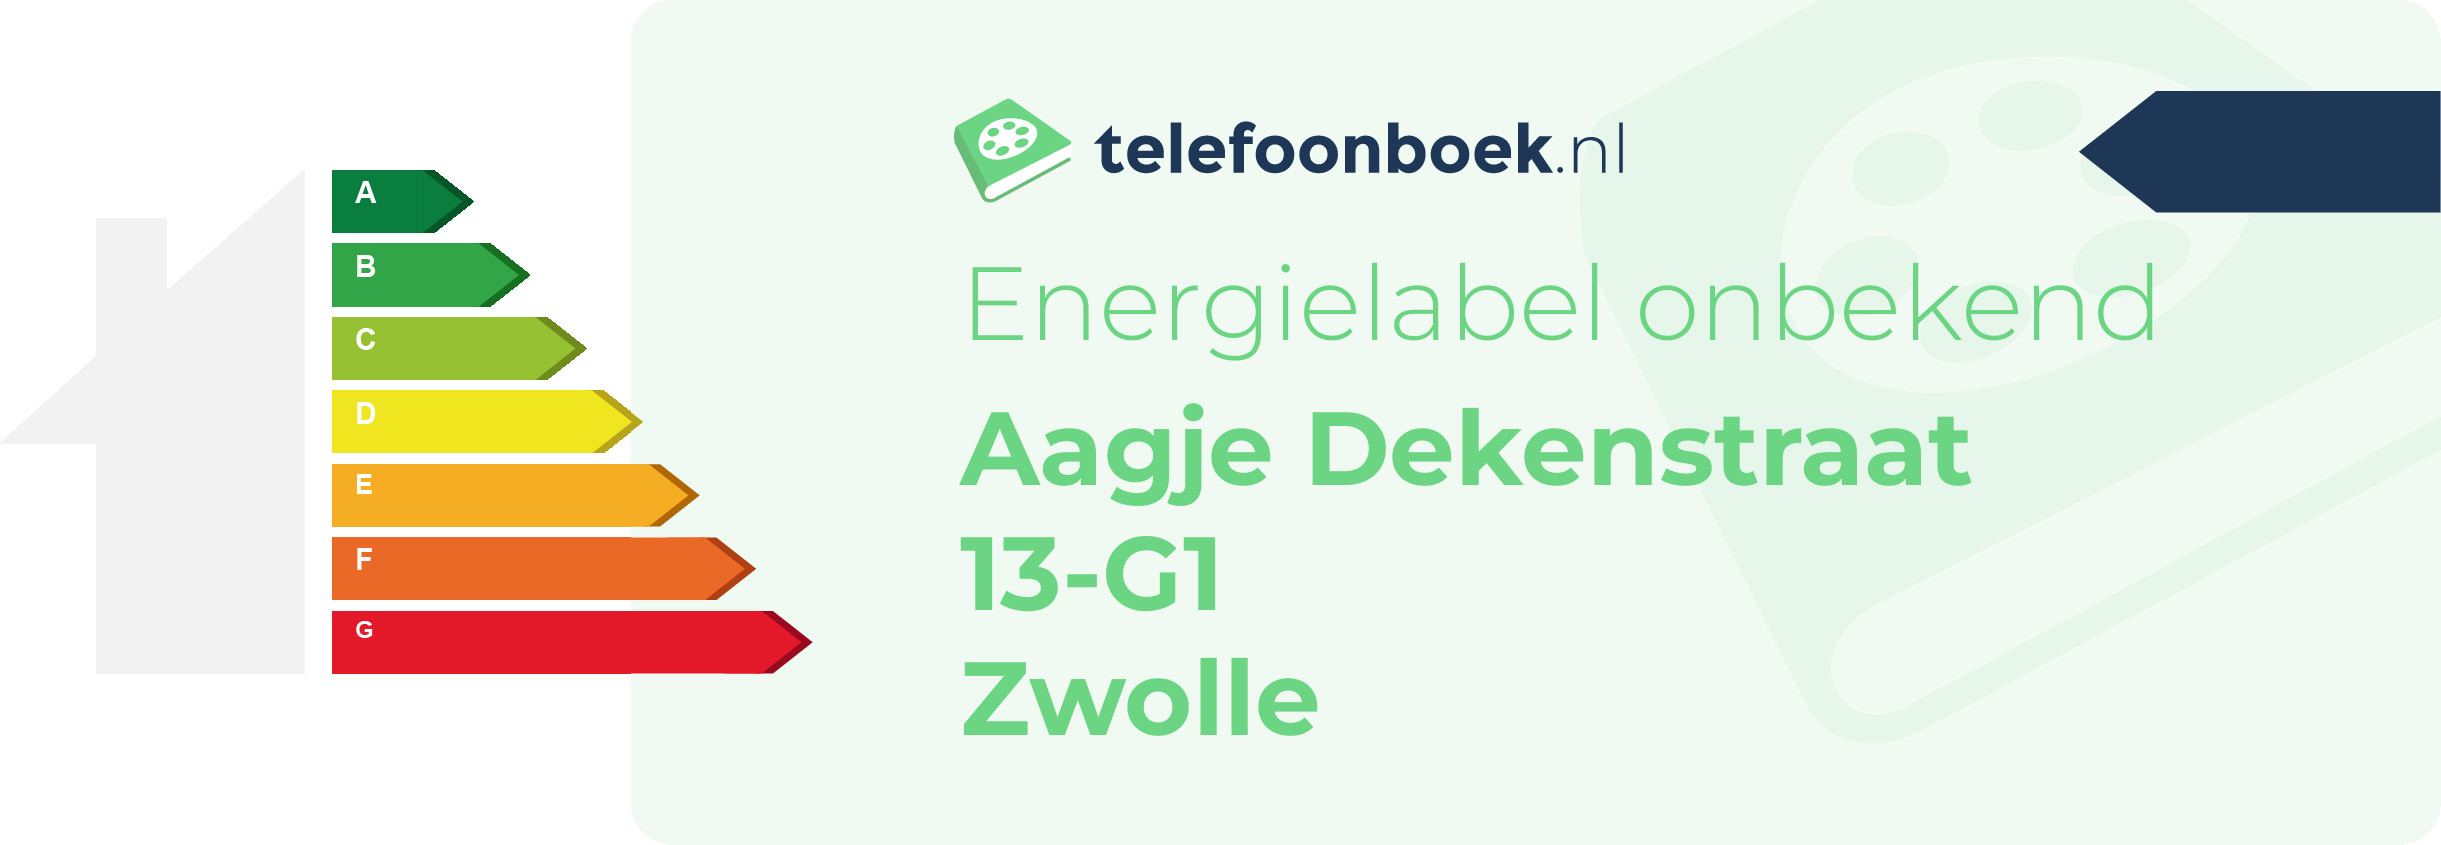 Energielabel Aagje Dekenstraat 13-G1 Zwolle